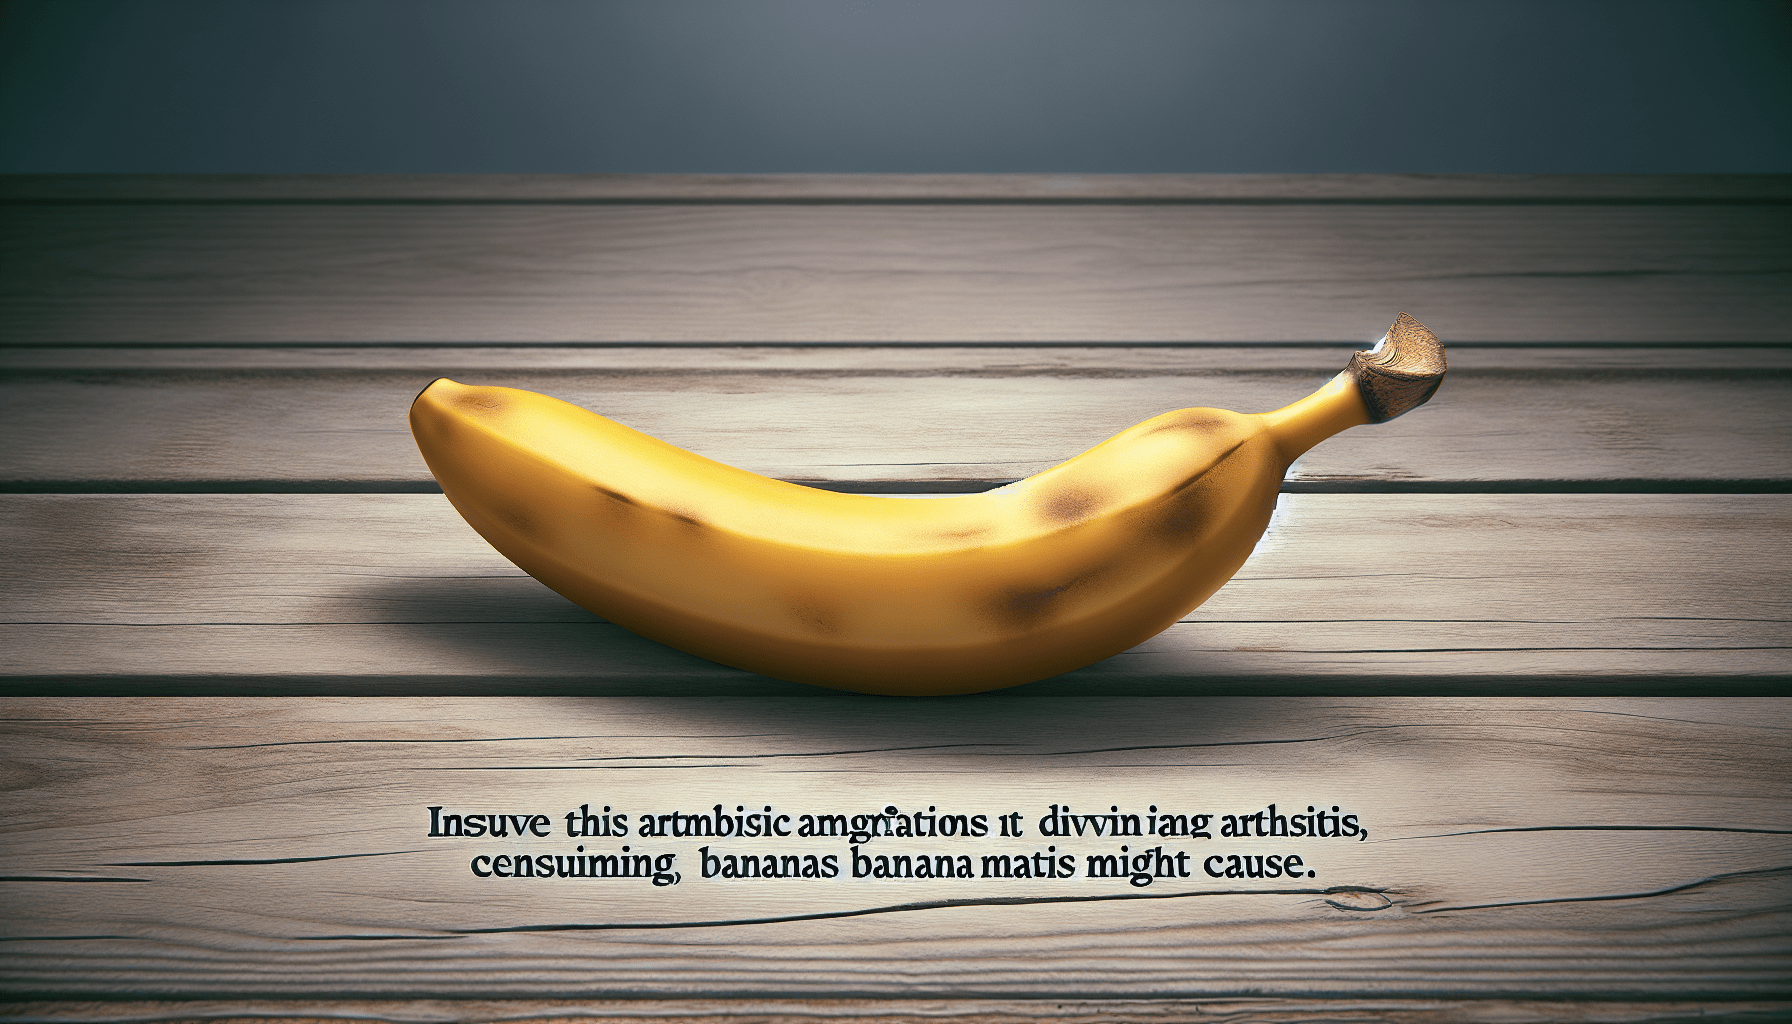 Do Bananas Aggravate Arthritis?